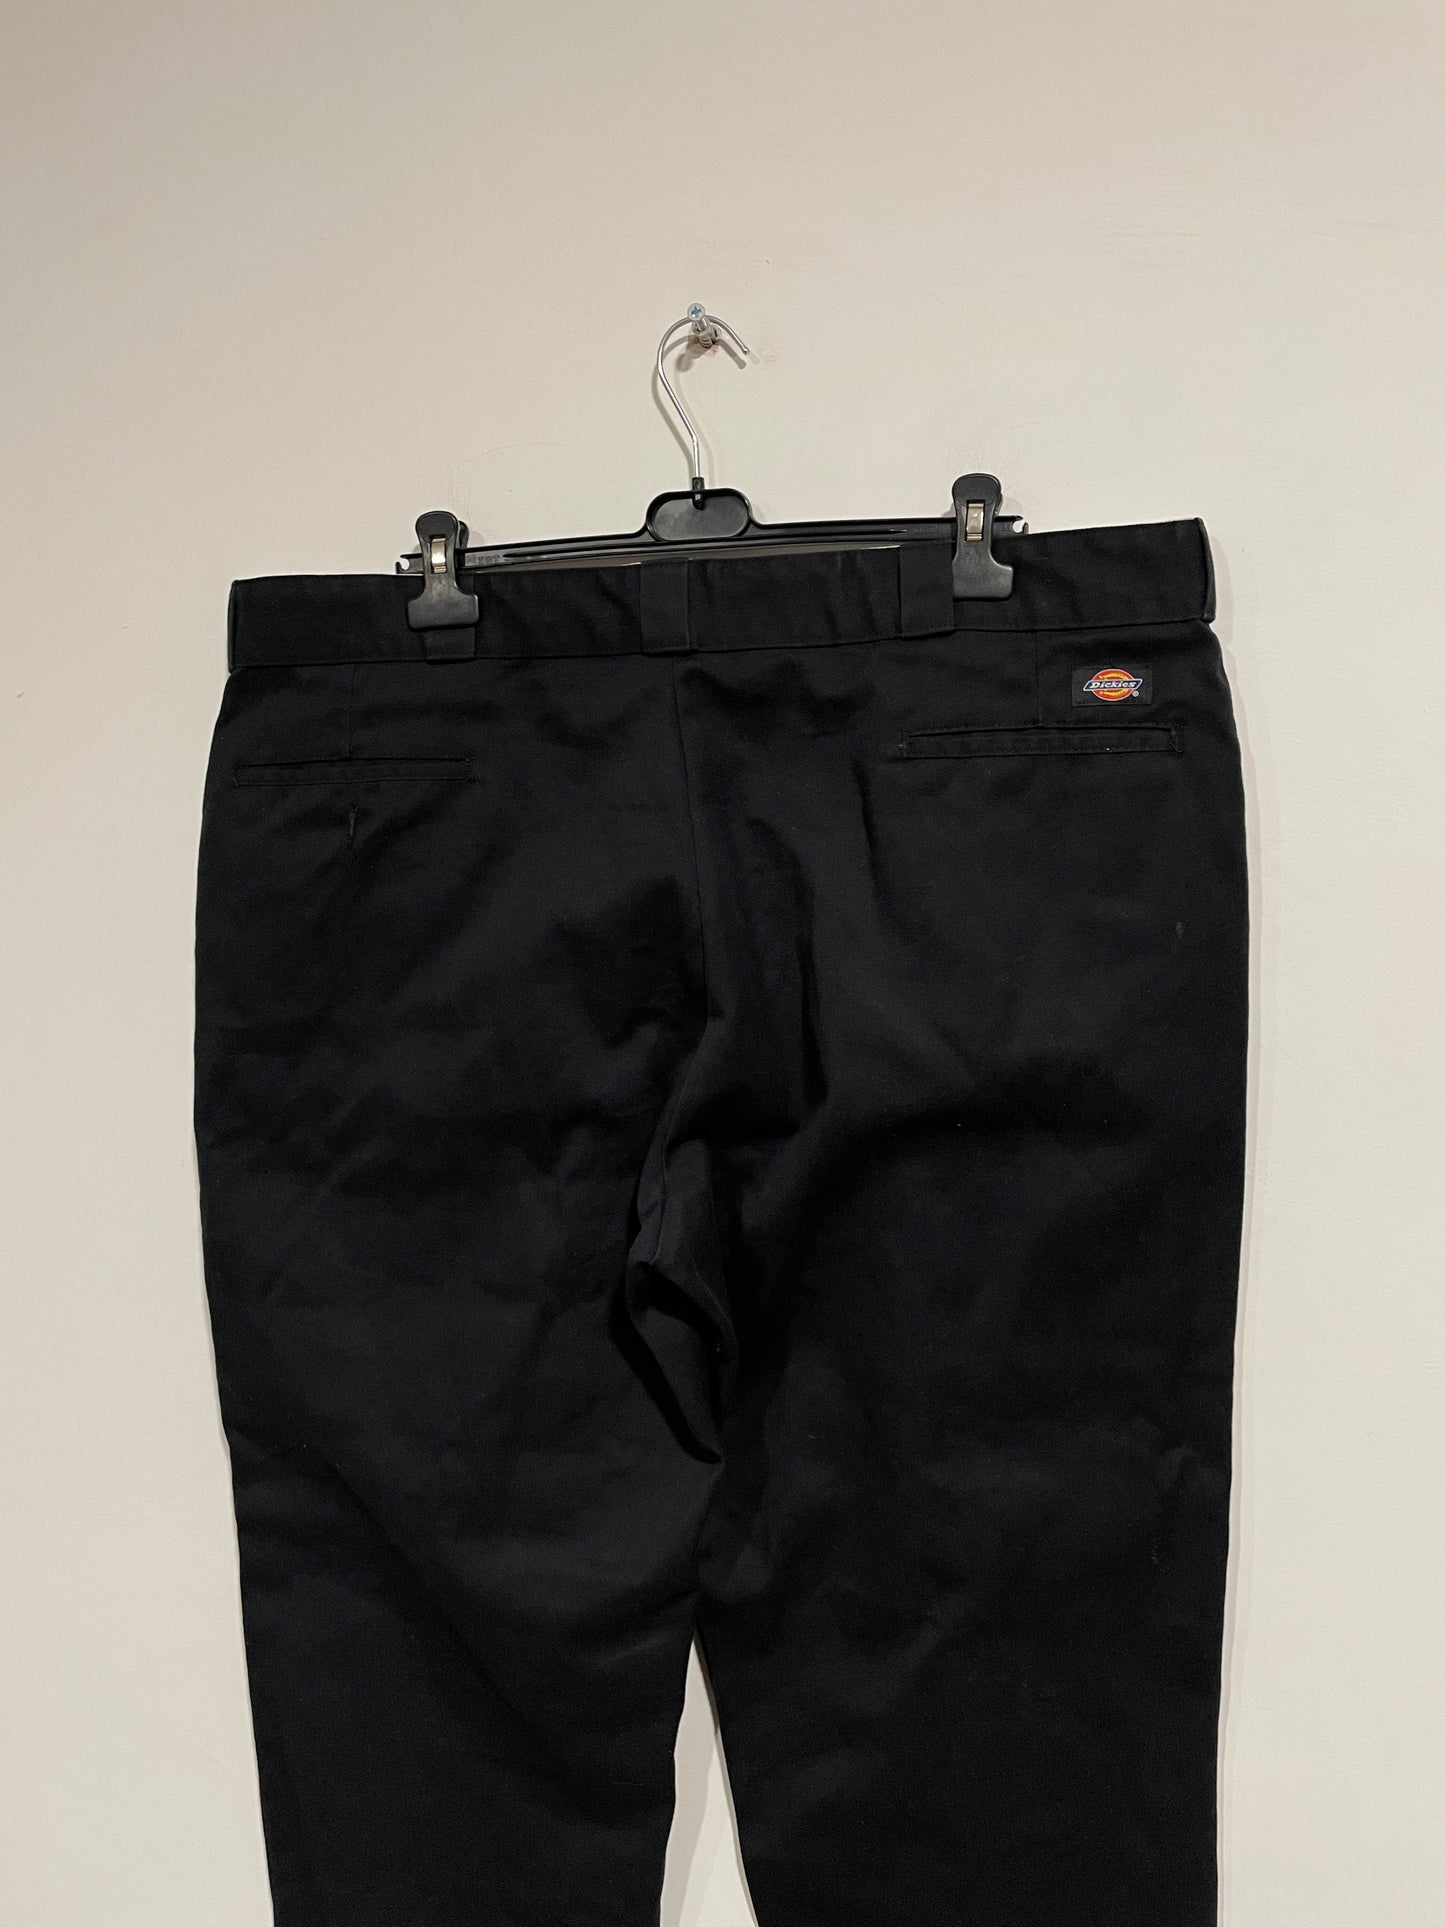 Pantalone baggy Dickies 874 (MR087)